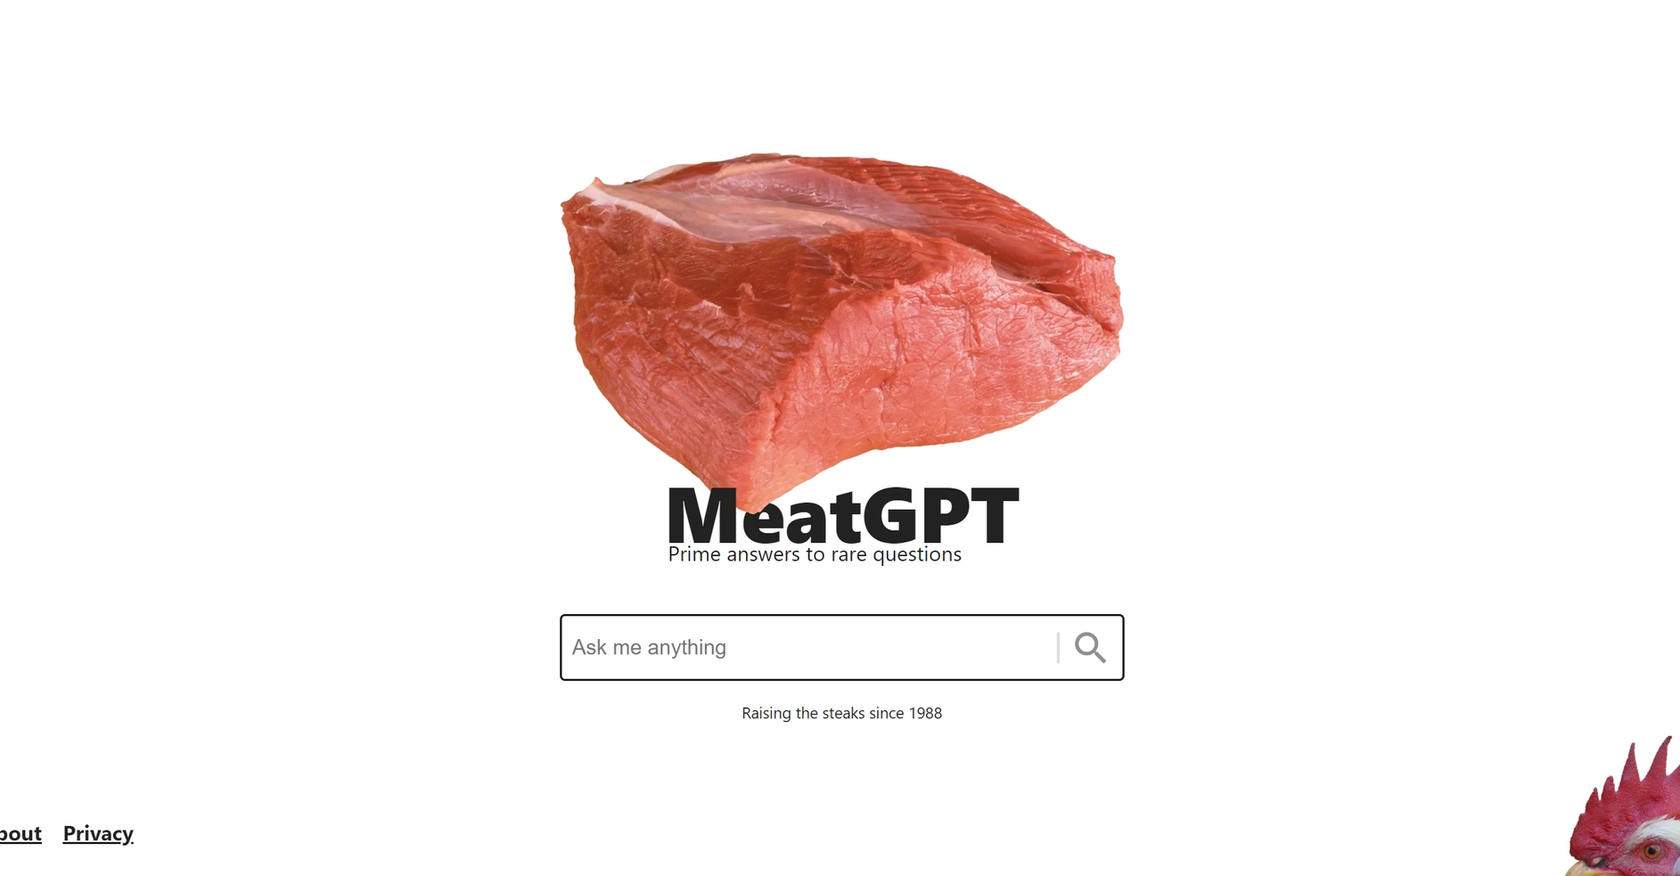 MeatGPT